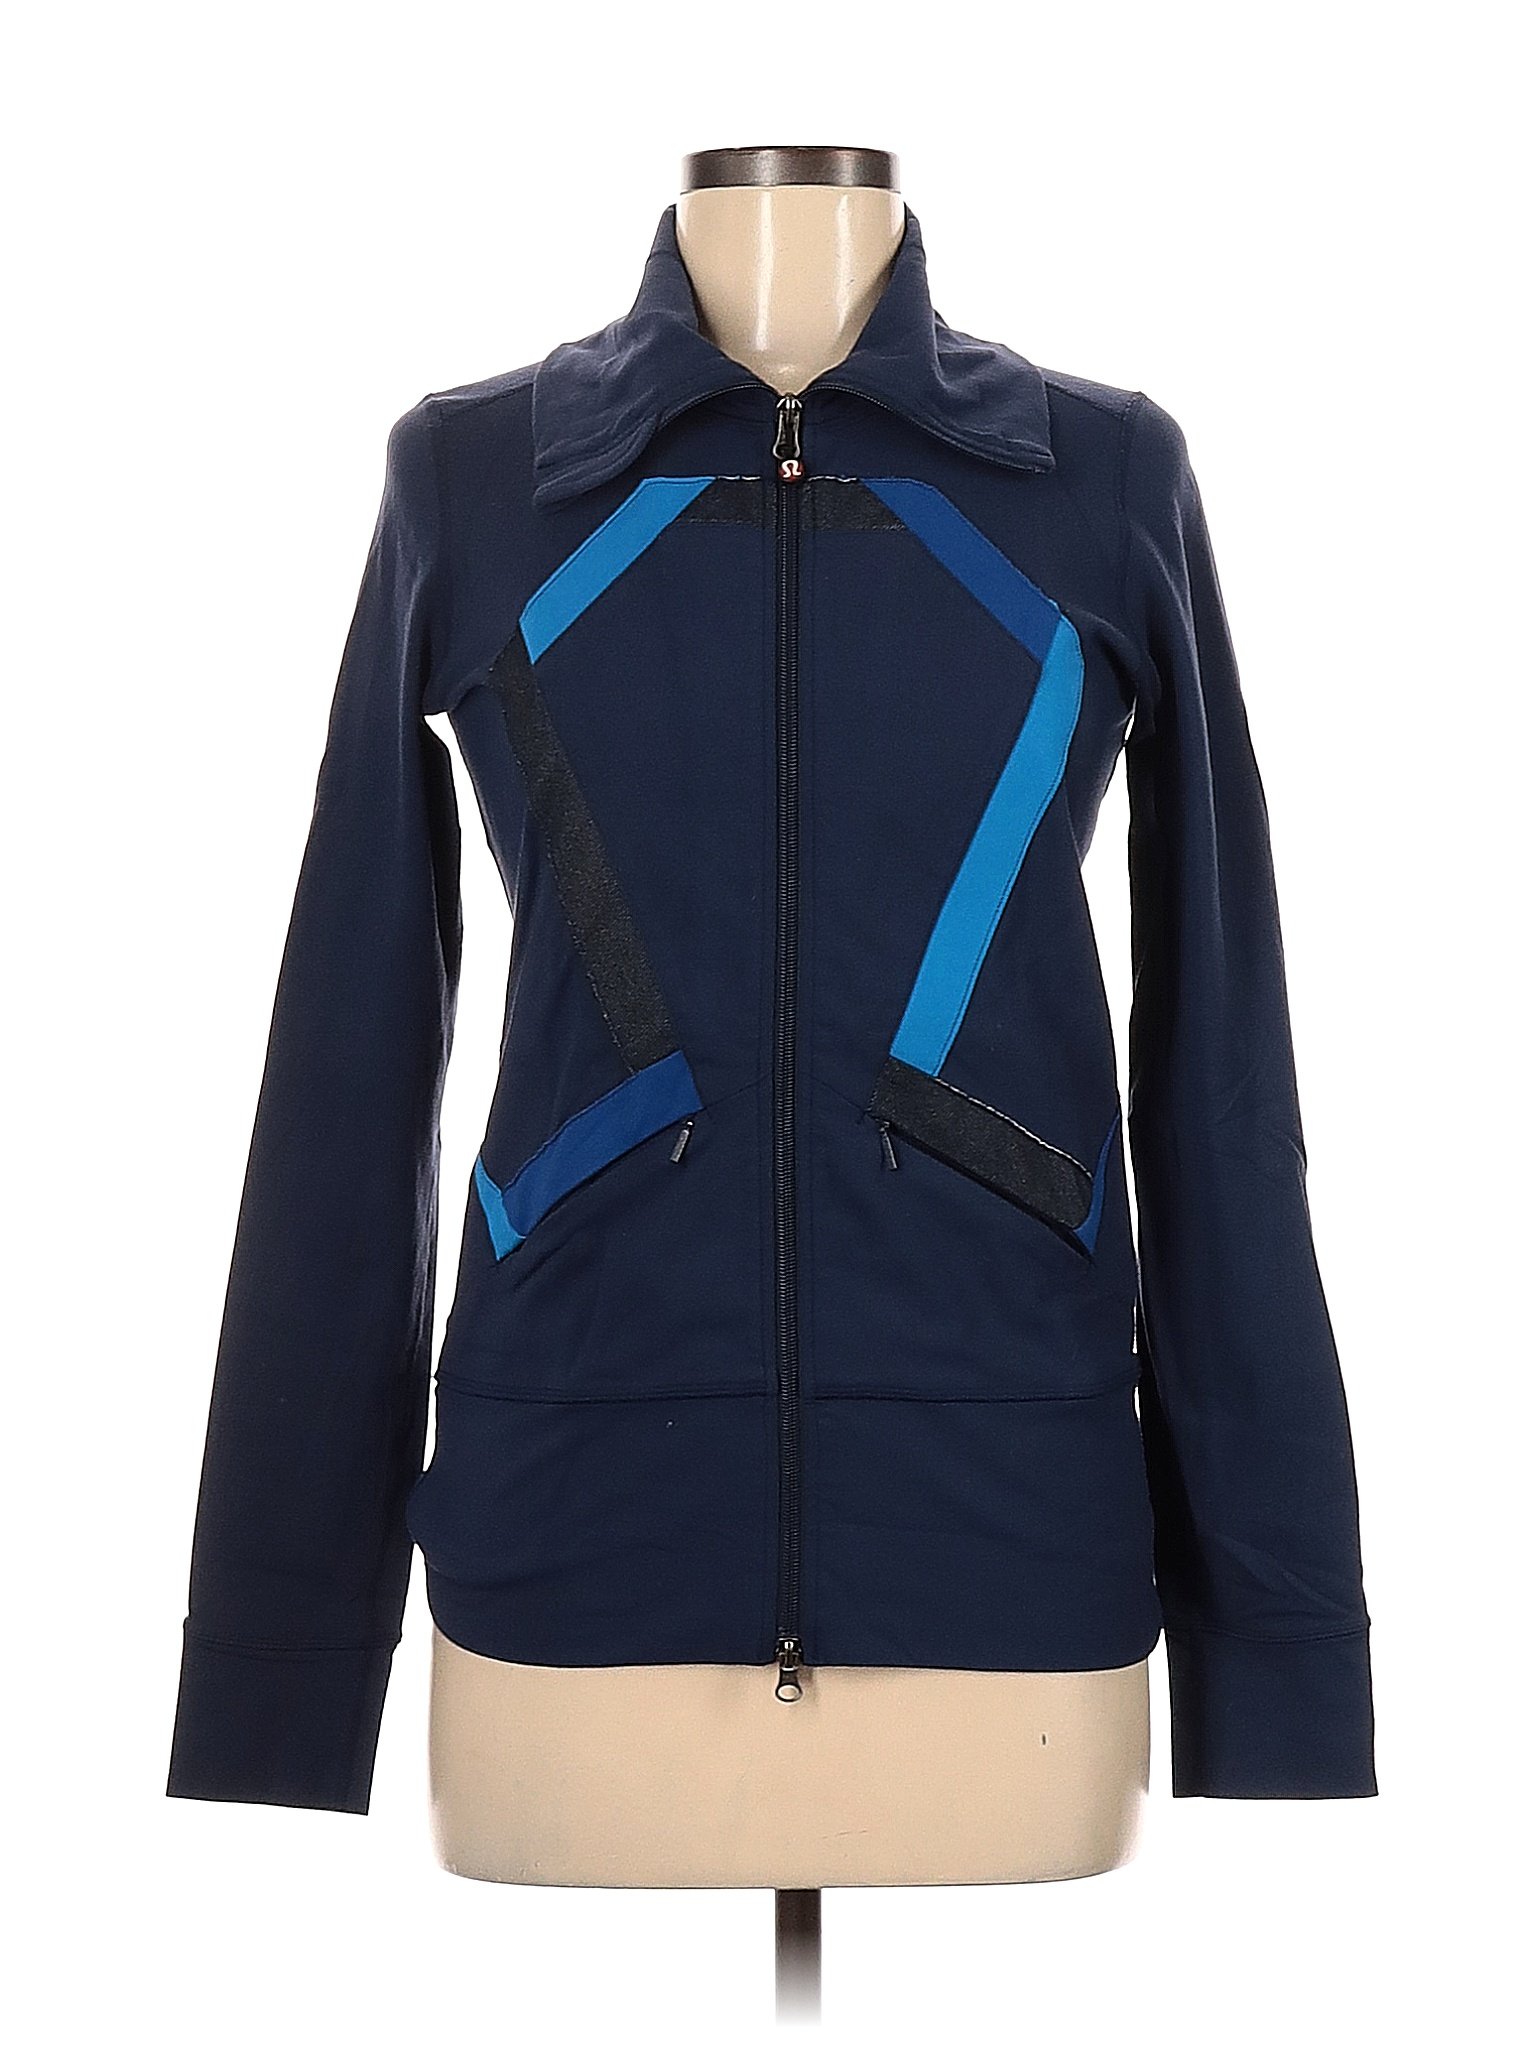 Lululemon Athletica Color Block Solid Blue Track Jacket Size 6 - 59% off